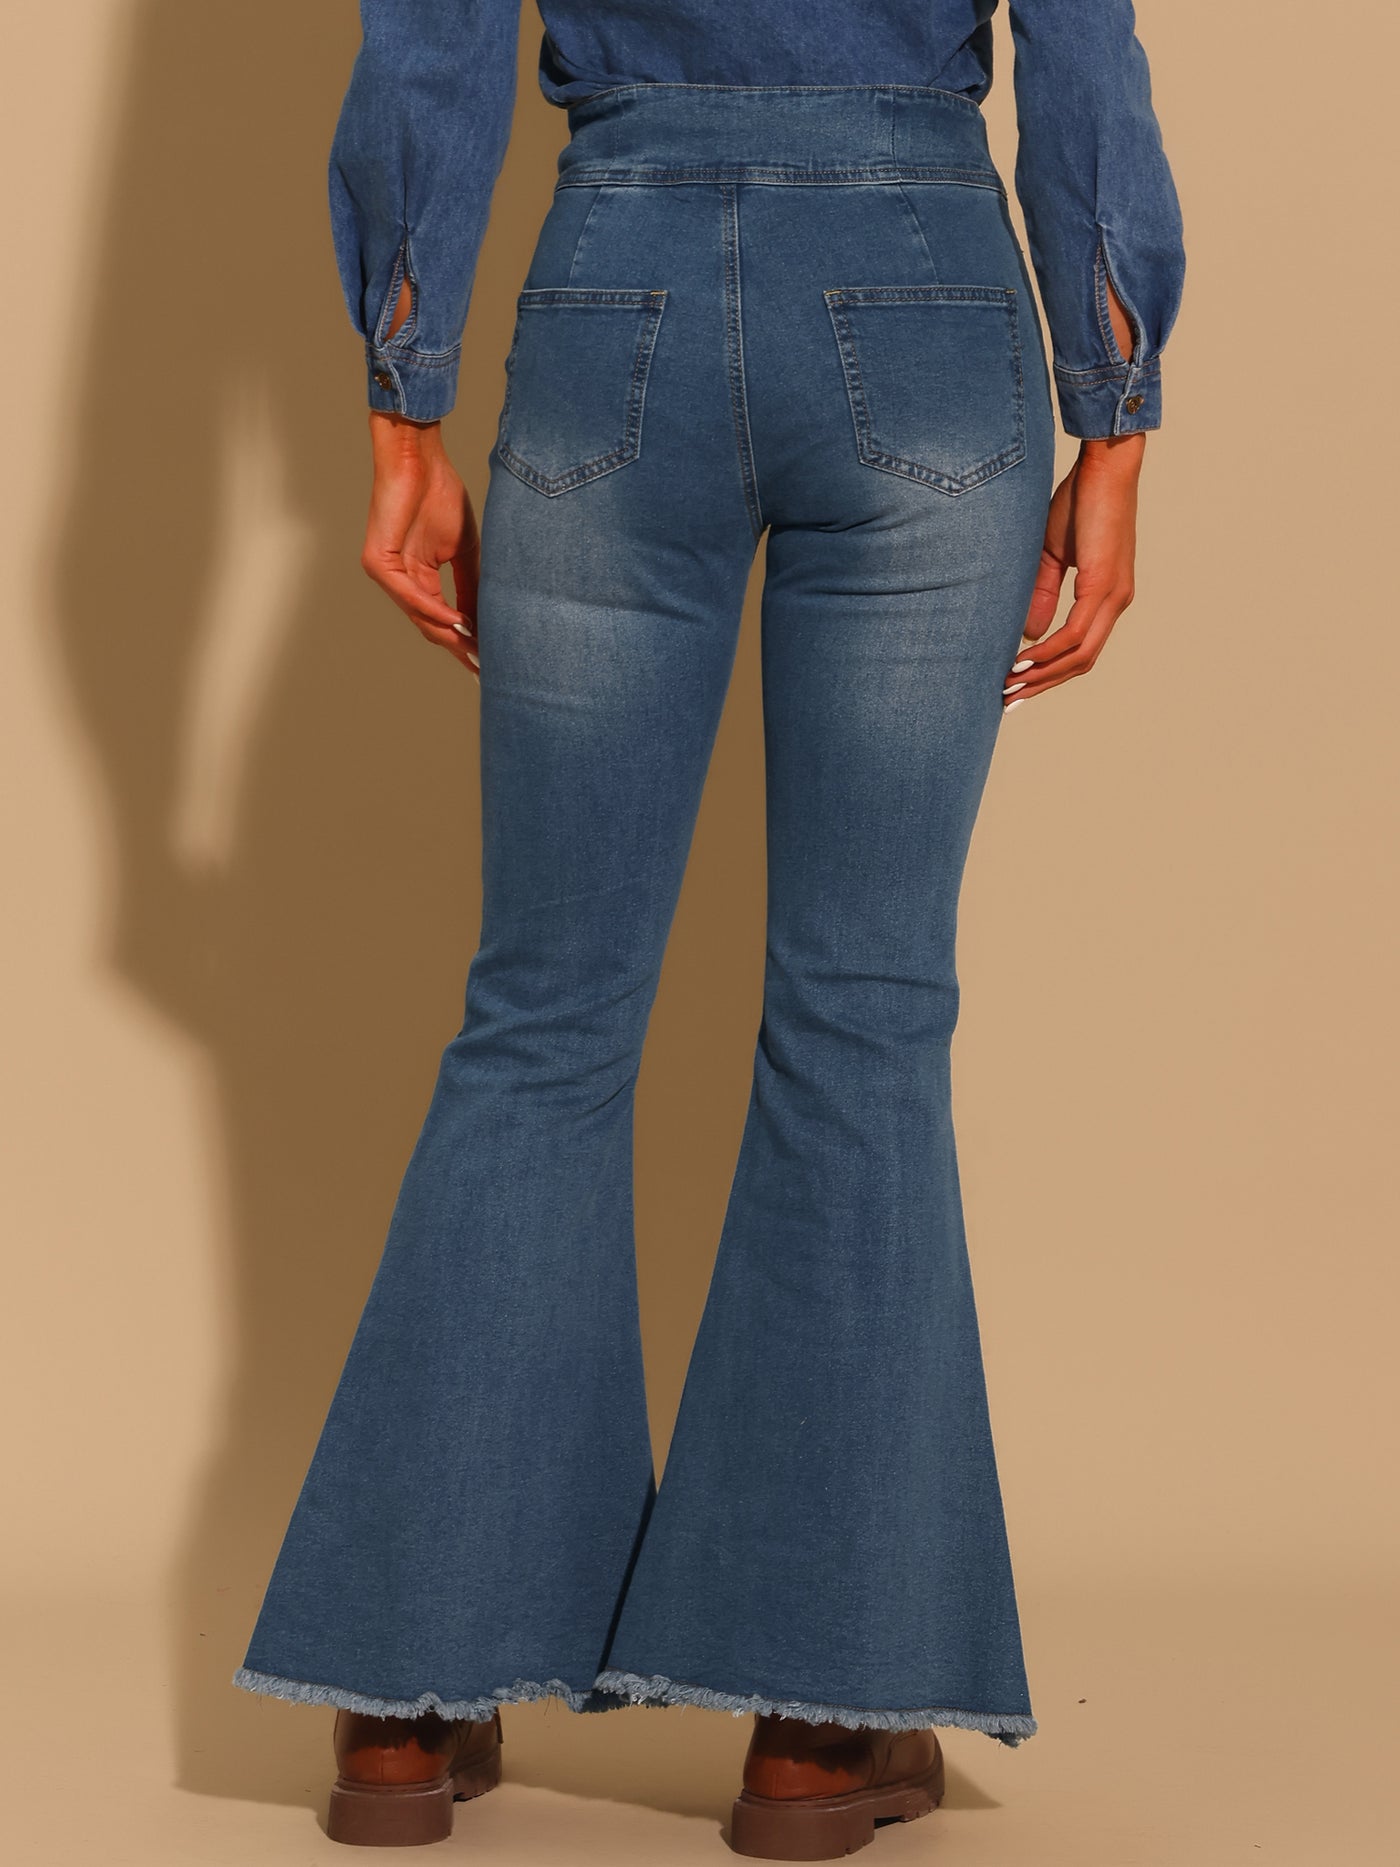 Allegra K Women's Bell Bottom Jeans High Rised Classic Flared Denim Pants